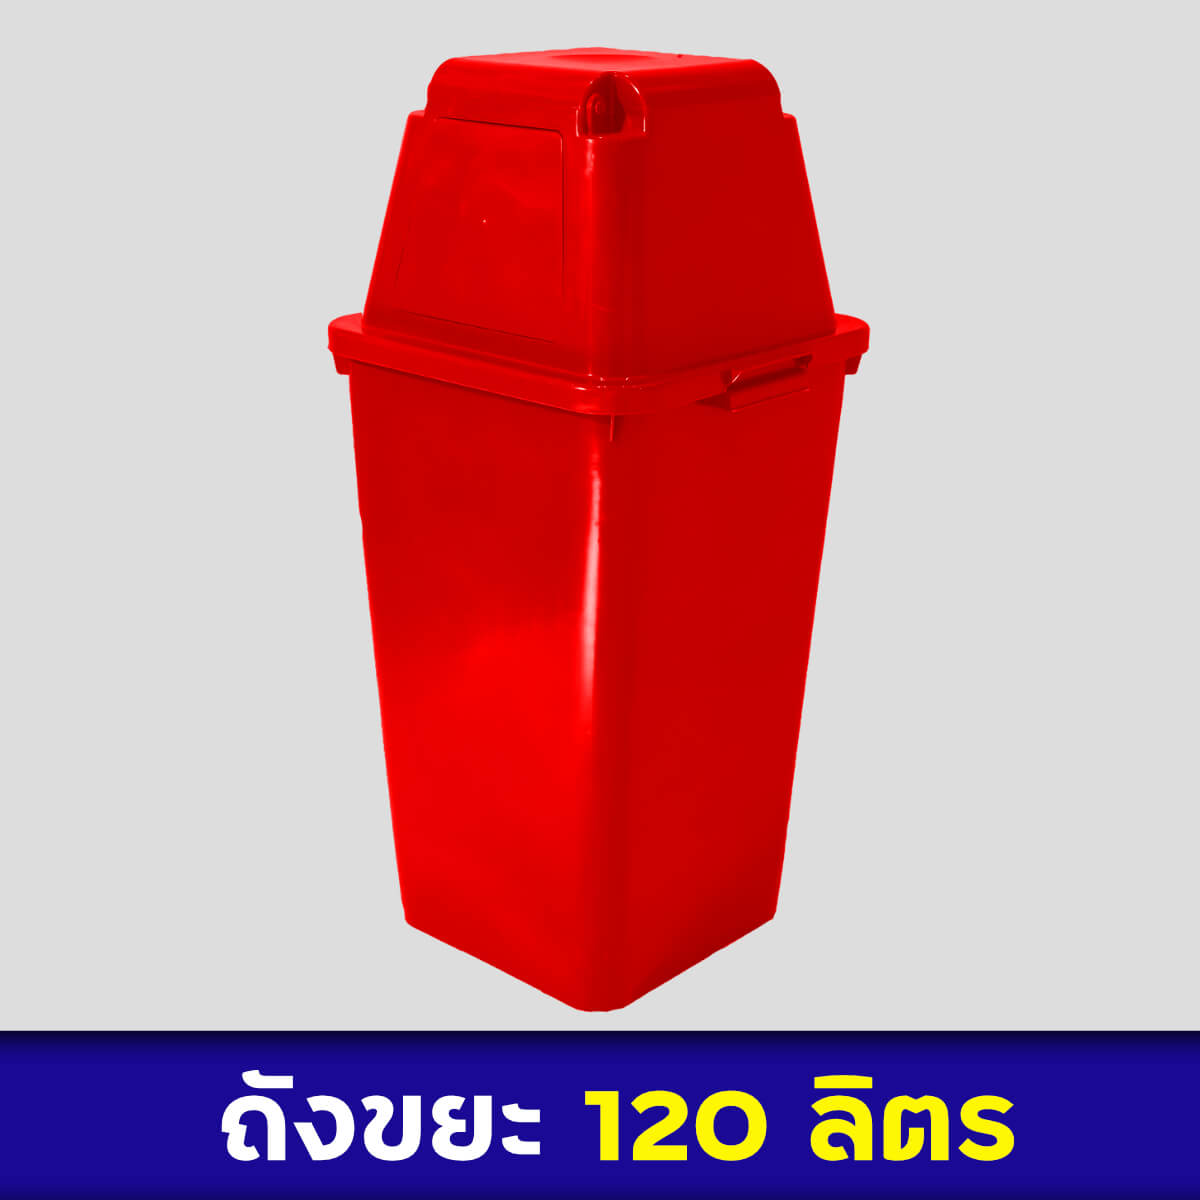 ถังขยะสีแดง 120ลิตร